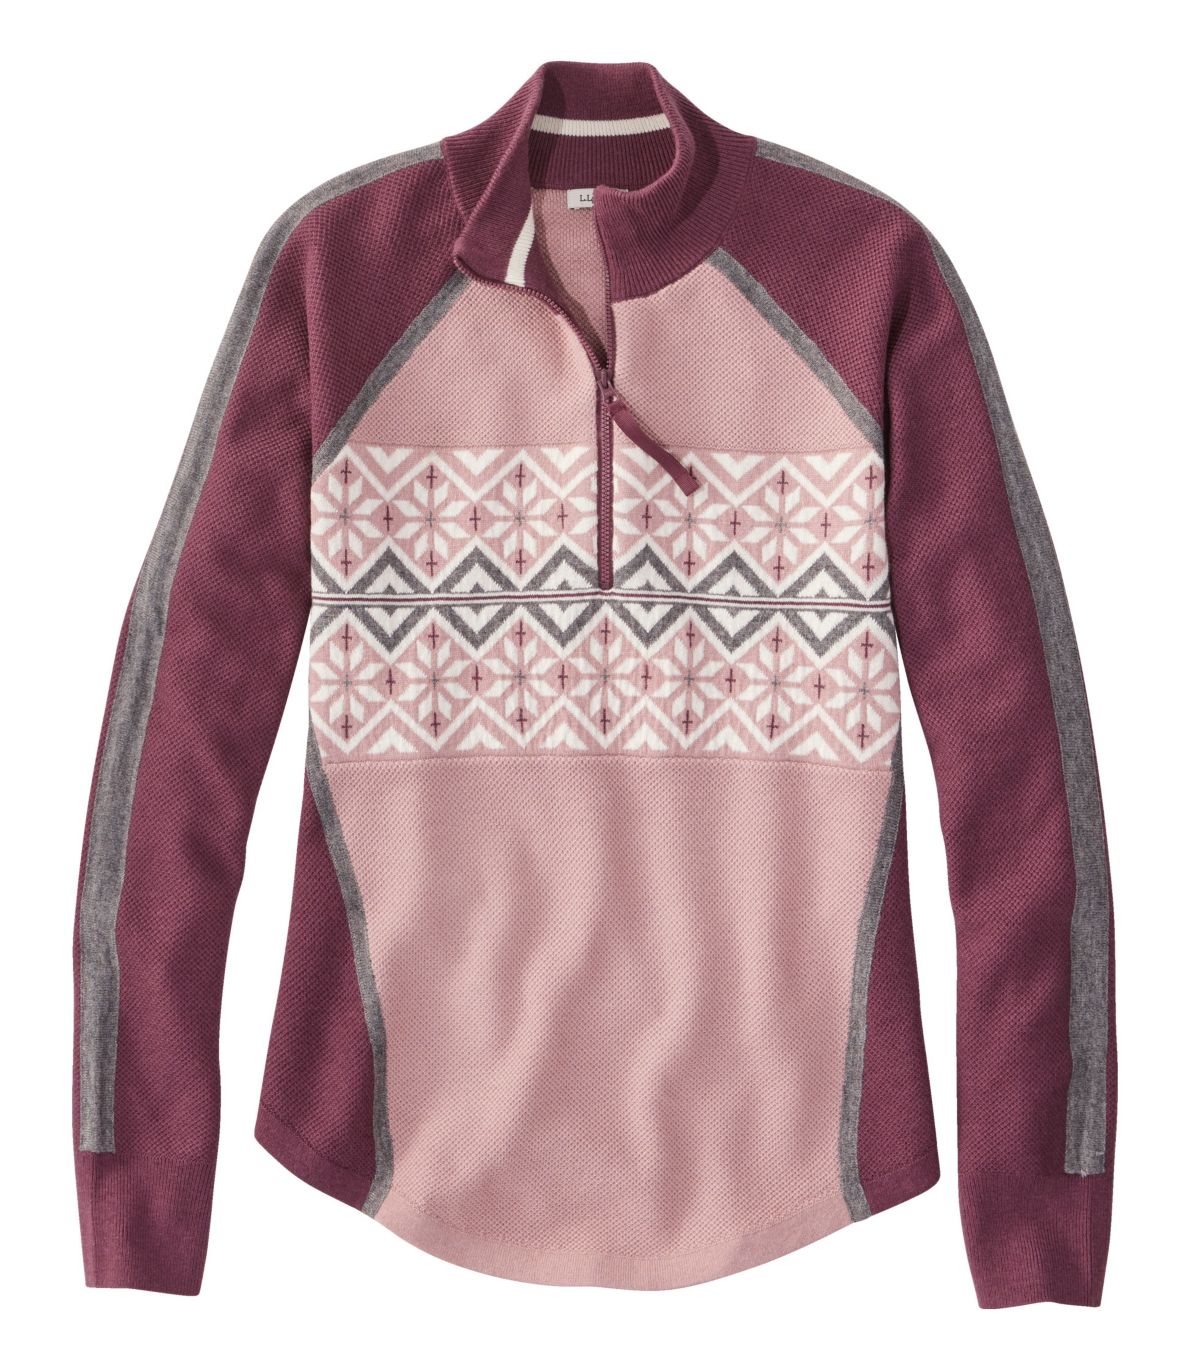 Women's Honeycomb Merino Wool-Blend Sweater, Quarter-Zip Colorblock